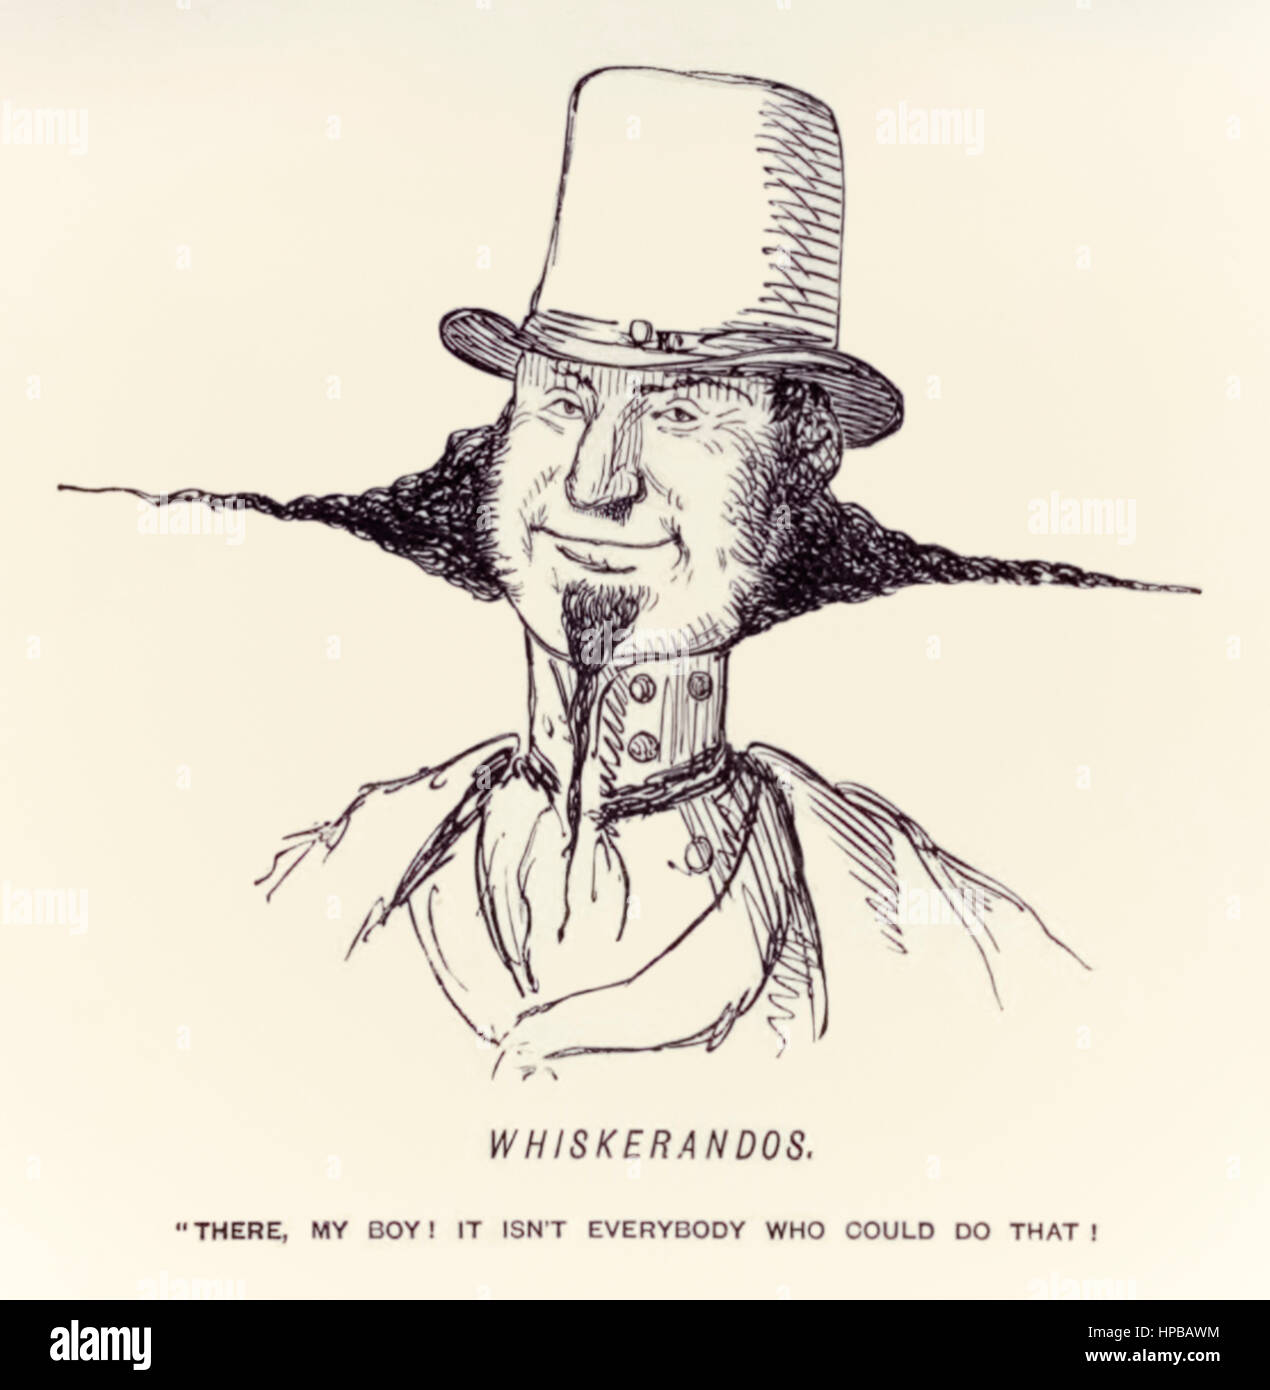 "Whiskerandos –"dort, mein Junge! Es ist nicht jeder, der das tun könnte!"" Illustration von John Leech (1817-1864) im Jahre 1854 in der satirischen Zeitschrift "Punch" veröffentlicht. Stockfoto